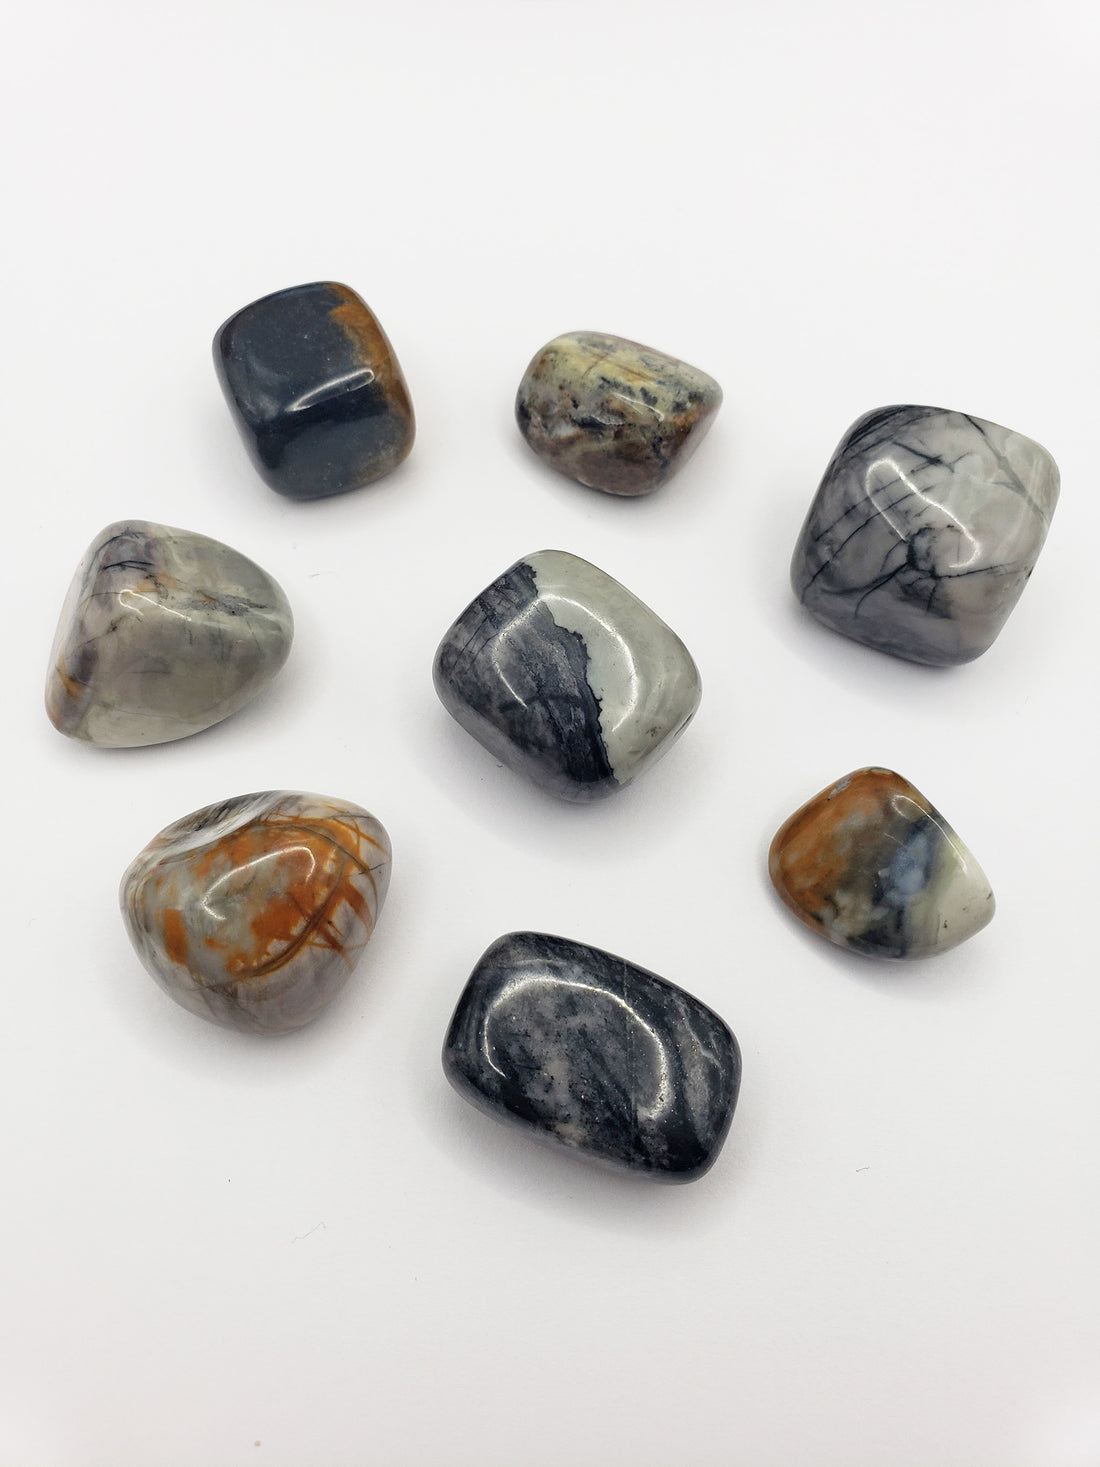 picasso jasper stones on white background